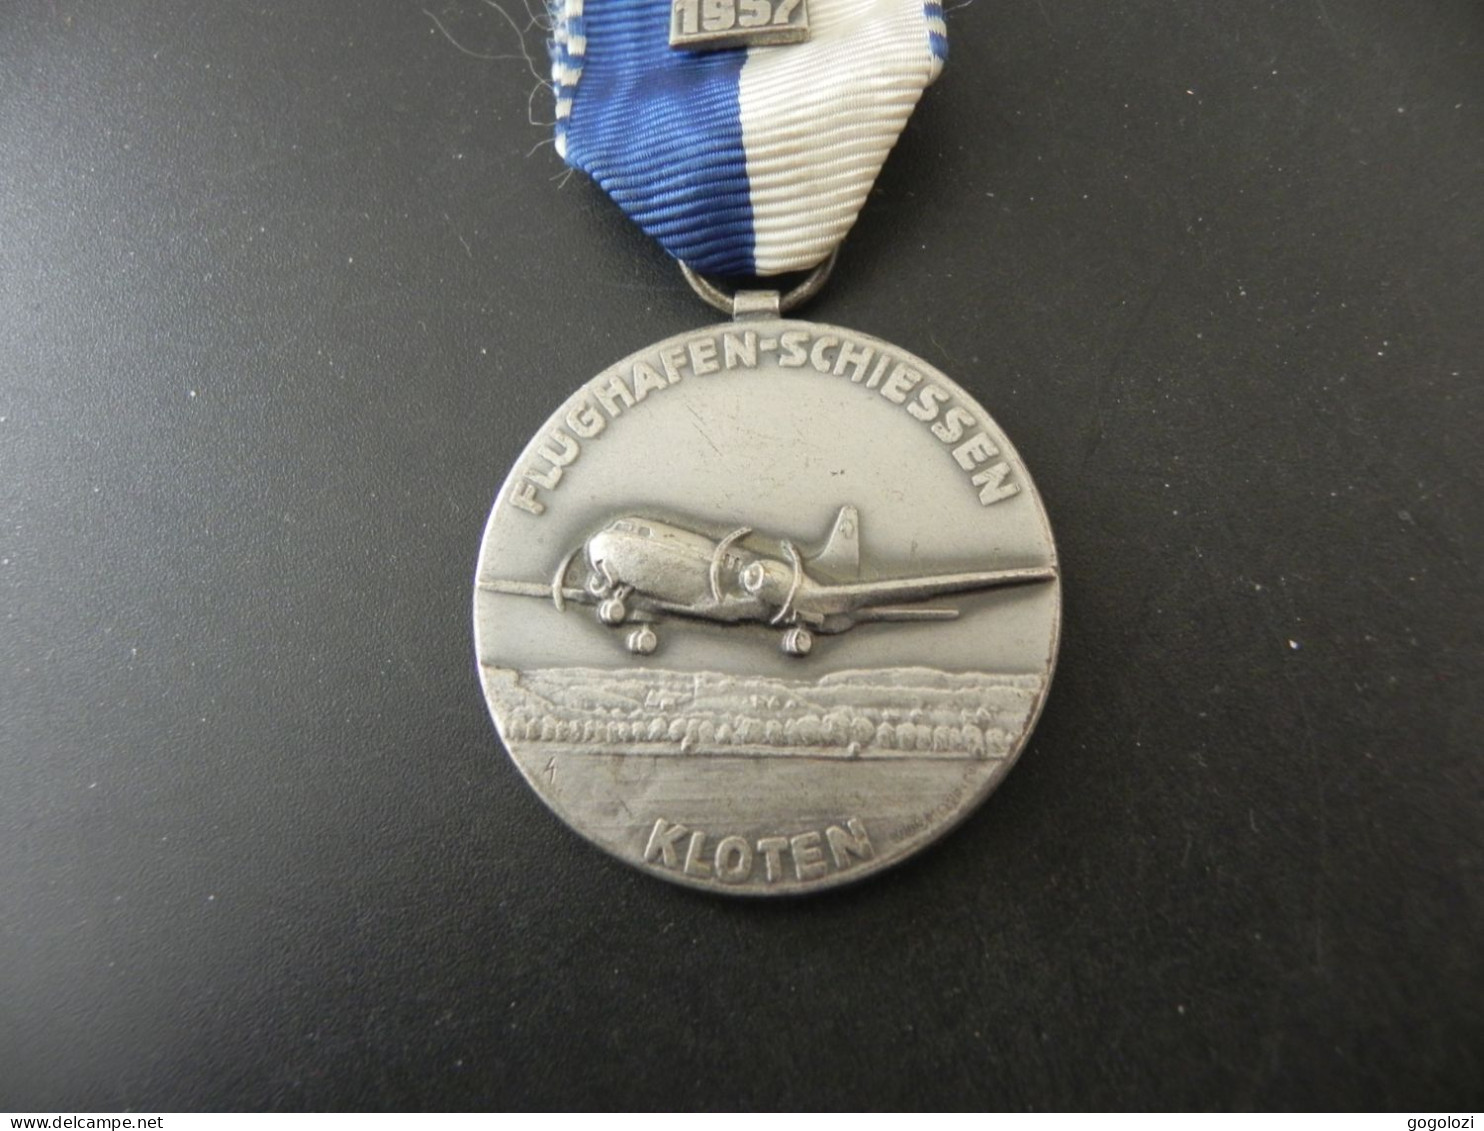 Shooting Medal - Medaille Schweiz Suisse Switzerland - Kranzauszeichnung Flughafen Schiessen Kloten 1957 - Autres & Non Classés